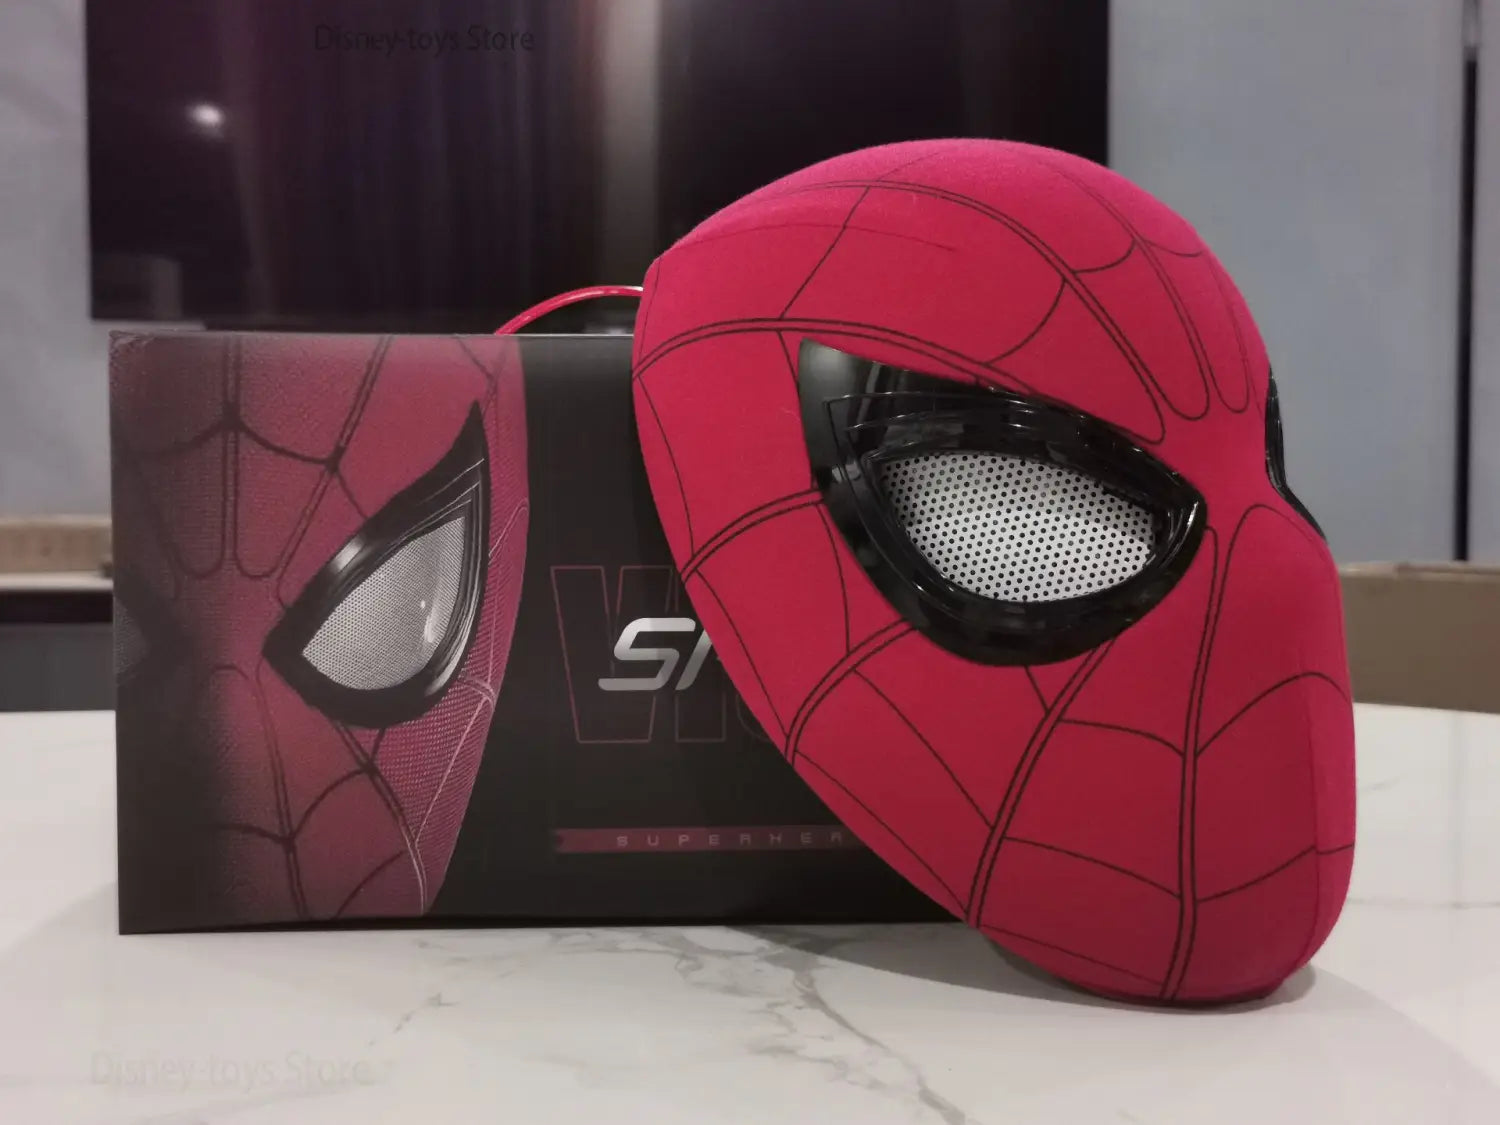 Masque Spider-Man électronique télécommandé